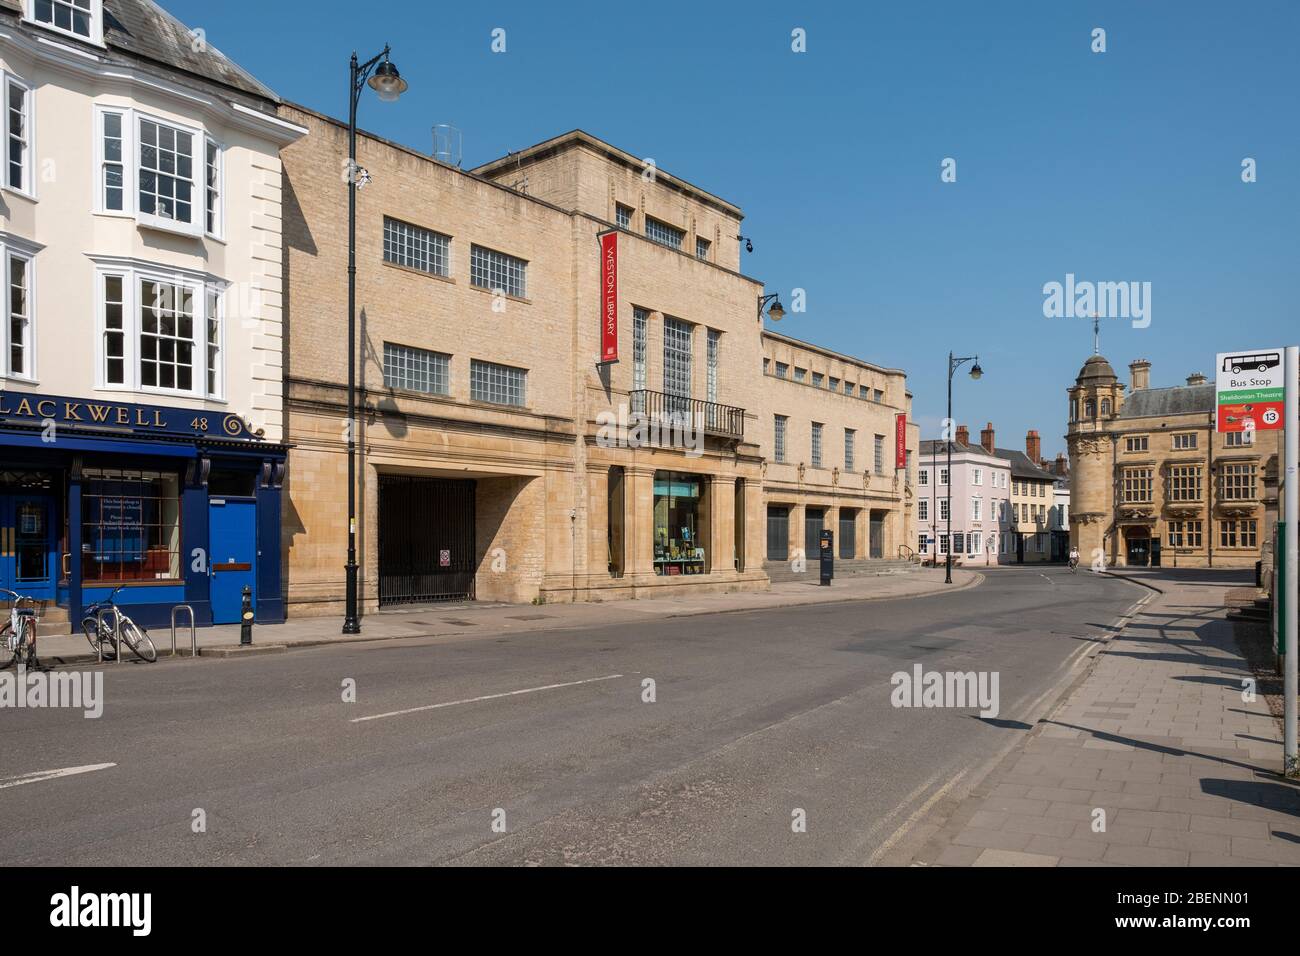 Bibliothèque Weston (Bordleian) Oxford Broad Street vide pendant le verrouillage de Covid-2019, Coronavirus Pâques 2020 Banque D'Images